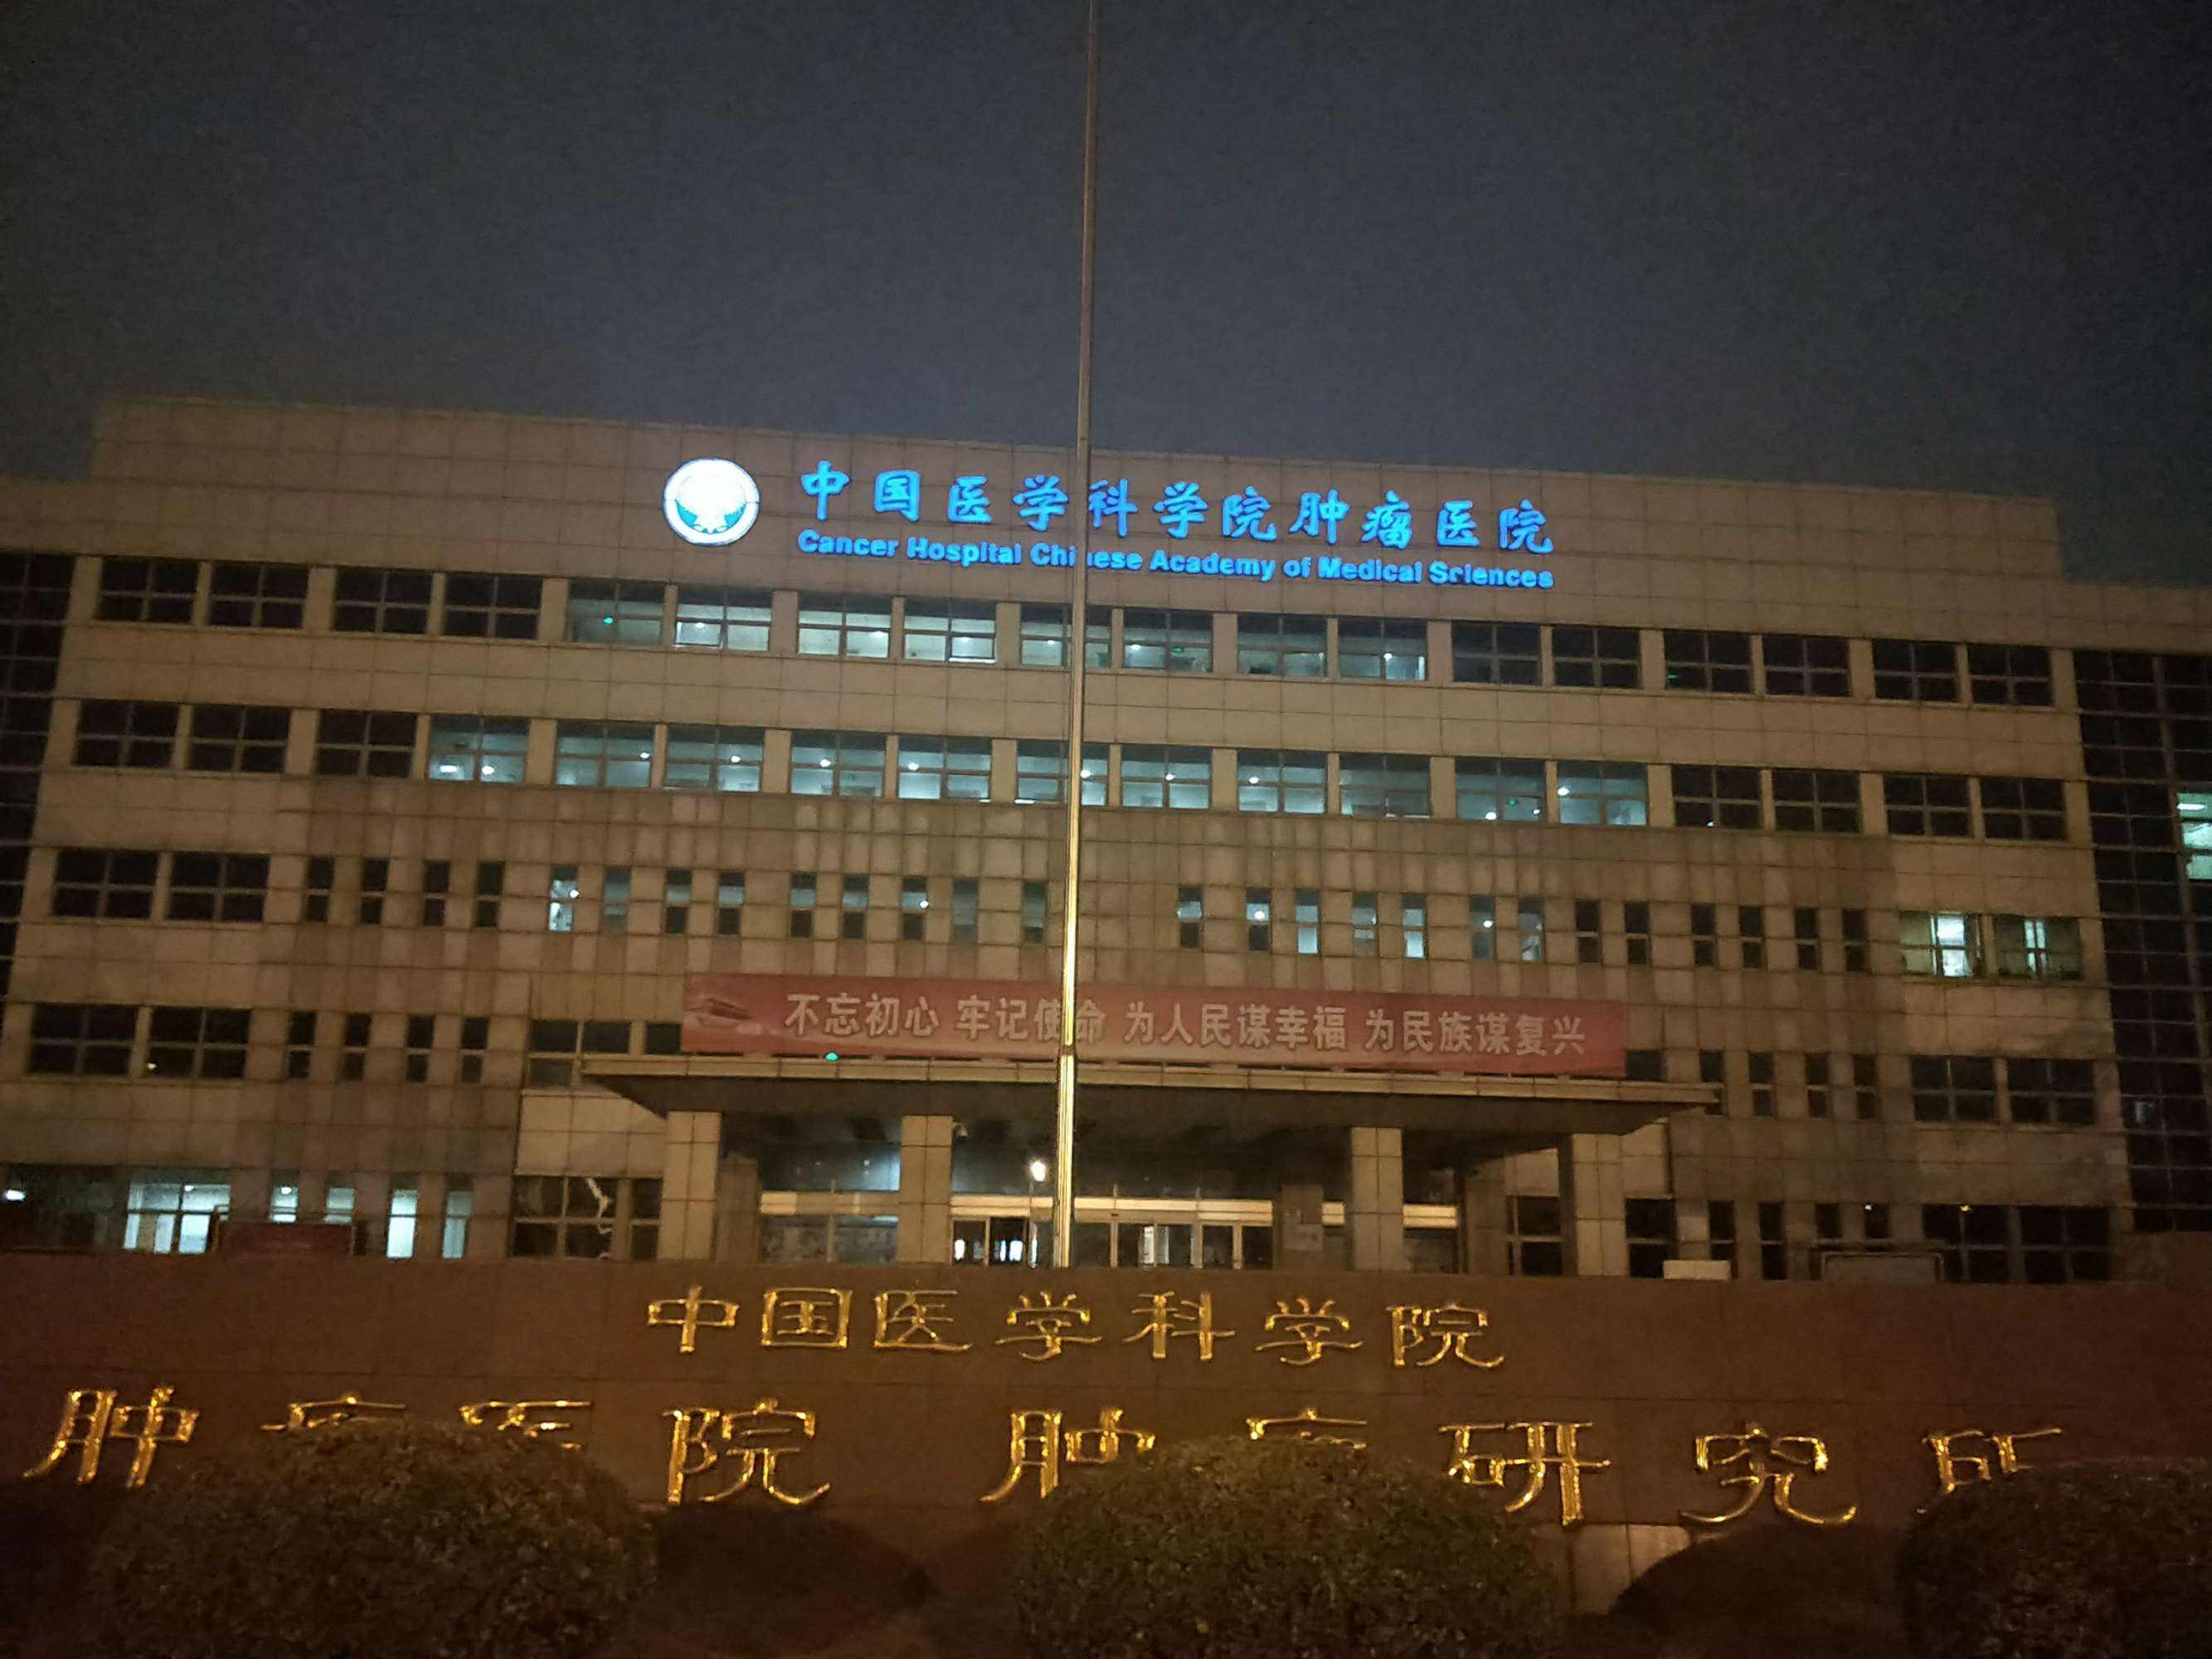 包含中国医学科学院肿瘤医院靠谱黄牛确实能挂到号!的词条